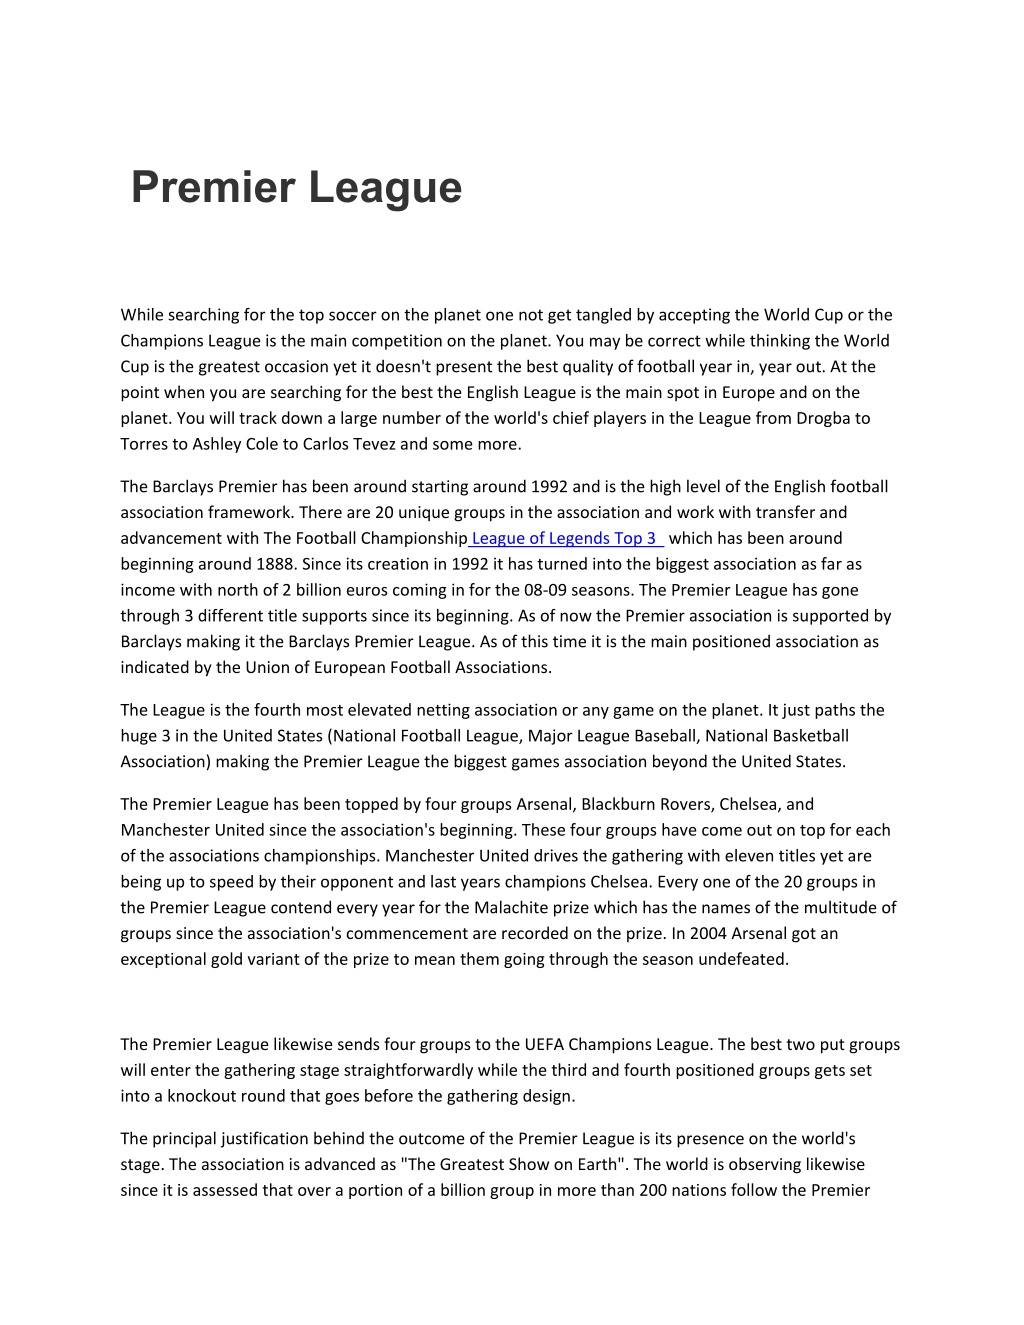 PPT - Premier League PowerPoint Presentation, free download